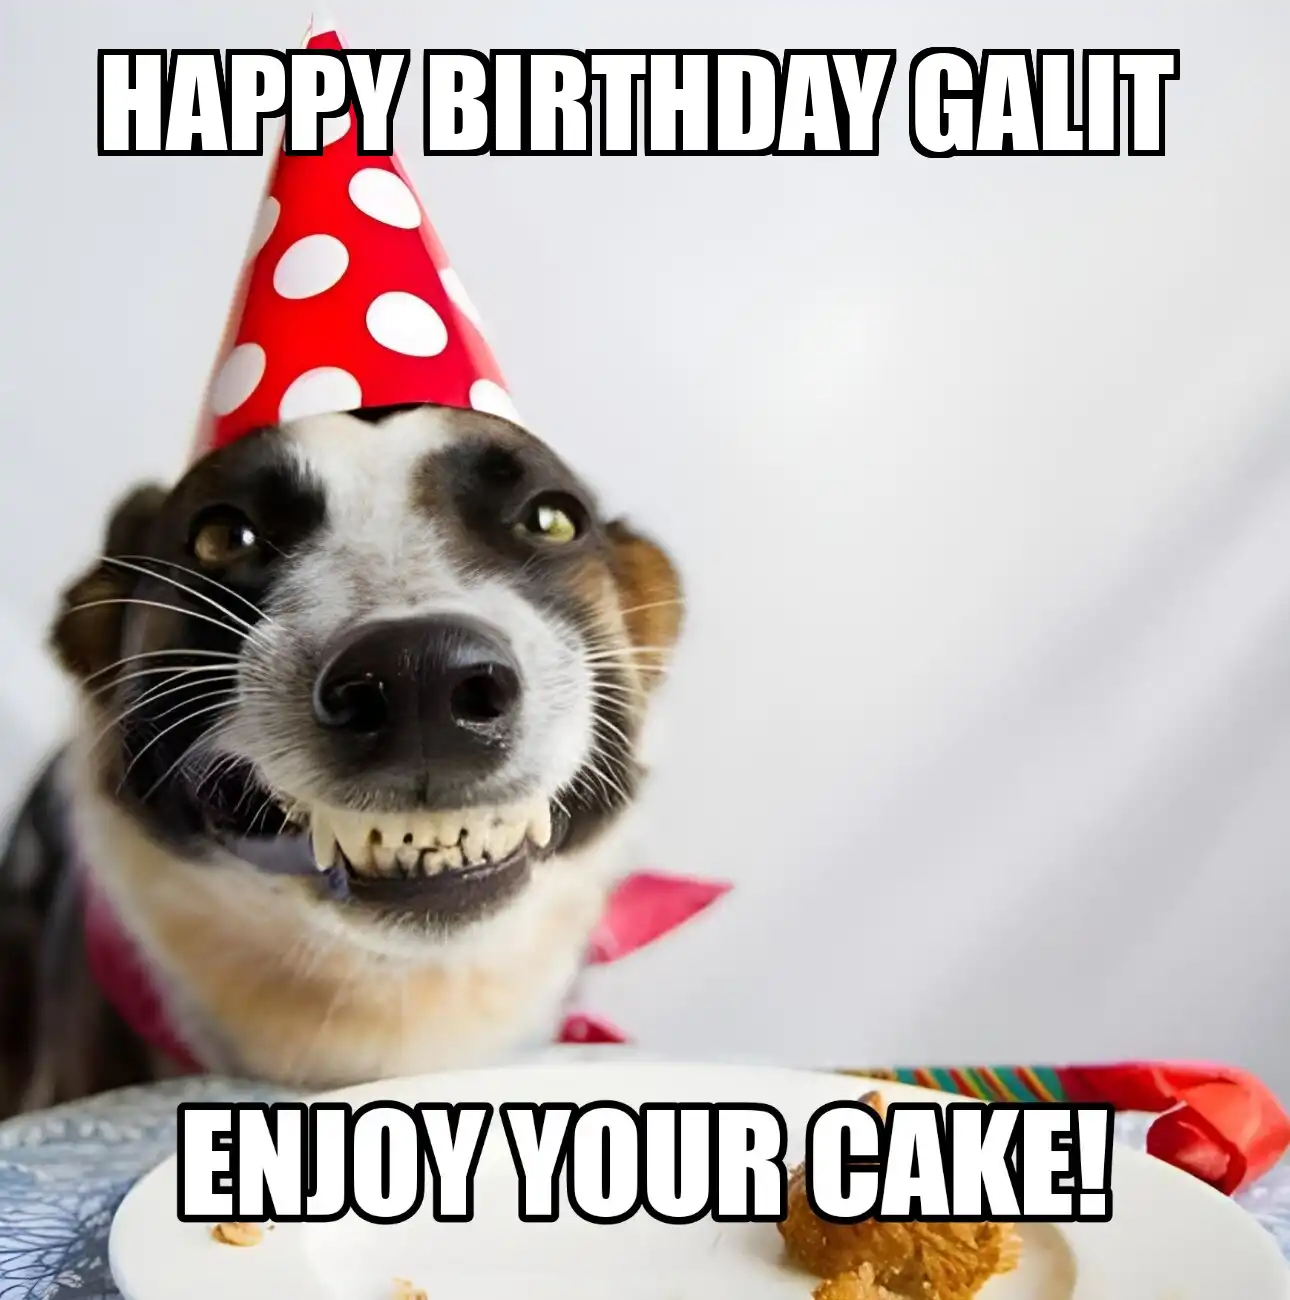 Happy Birthday Galit Enjoy Your Cake Dog Meme